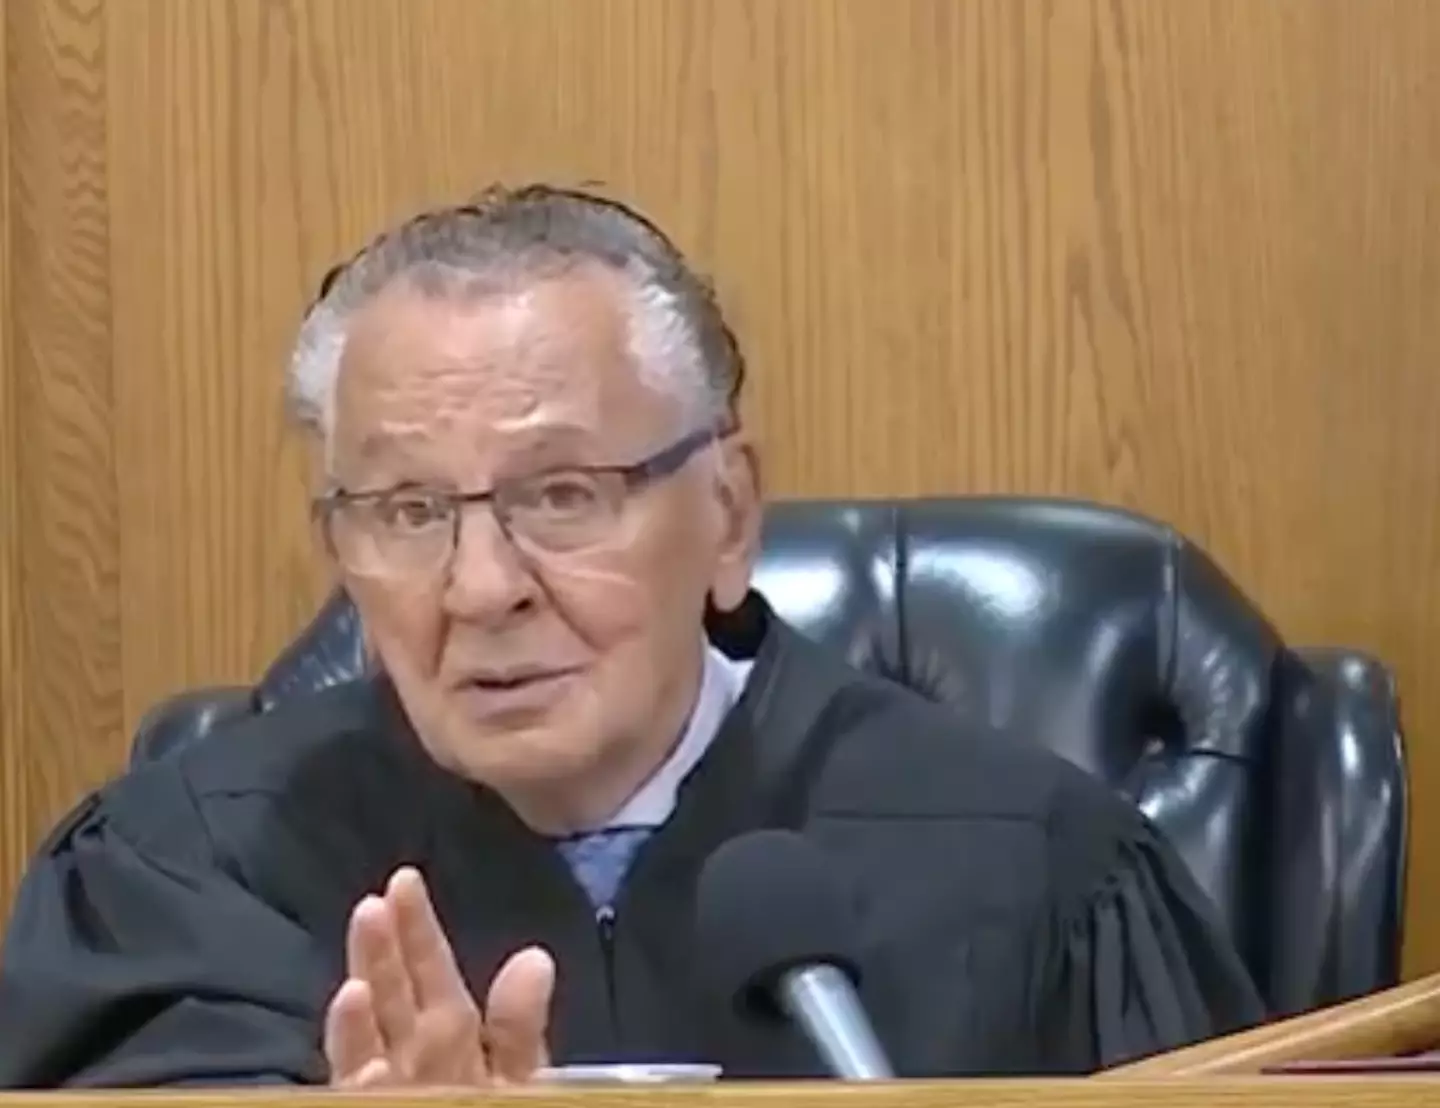 "This judge is so impressive!"